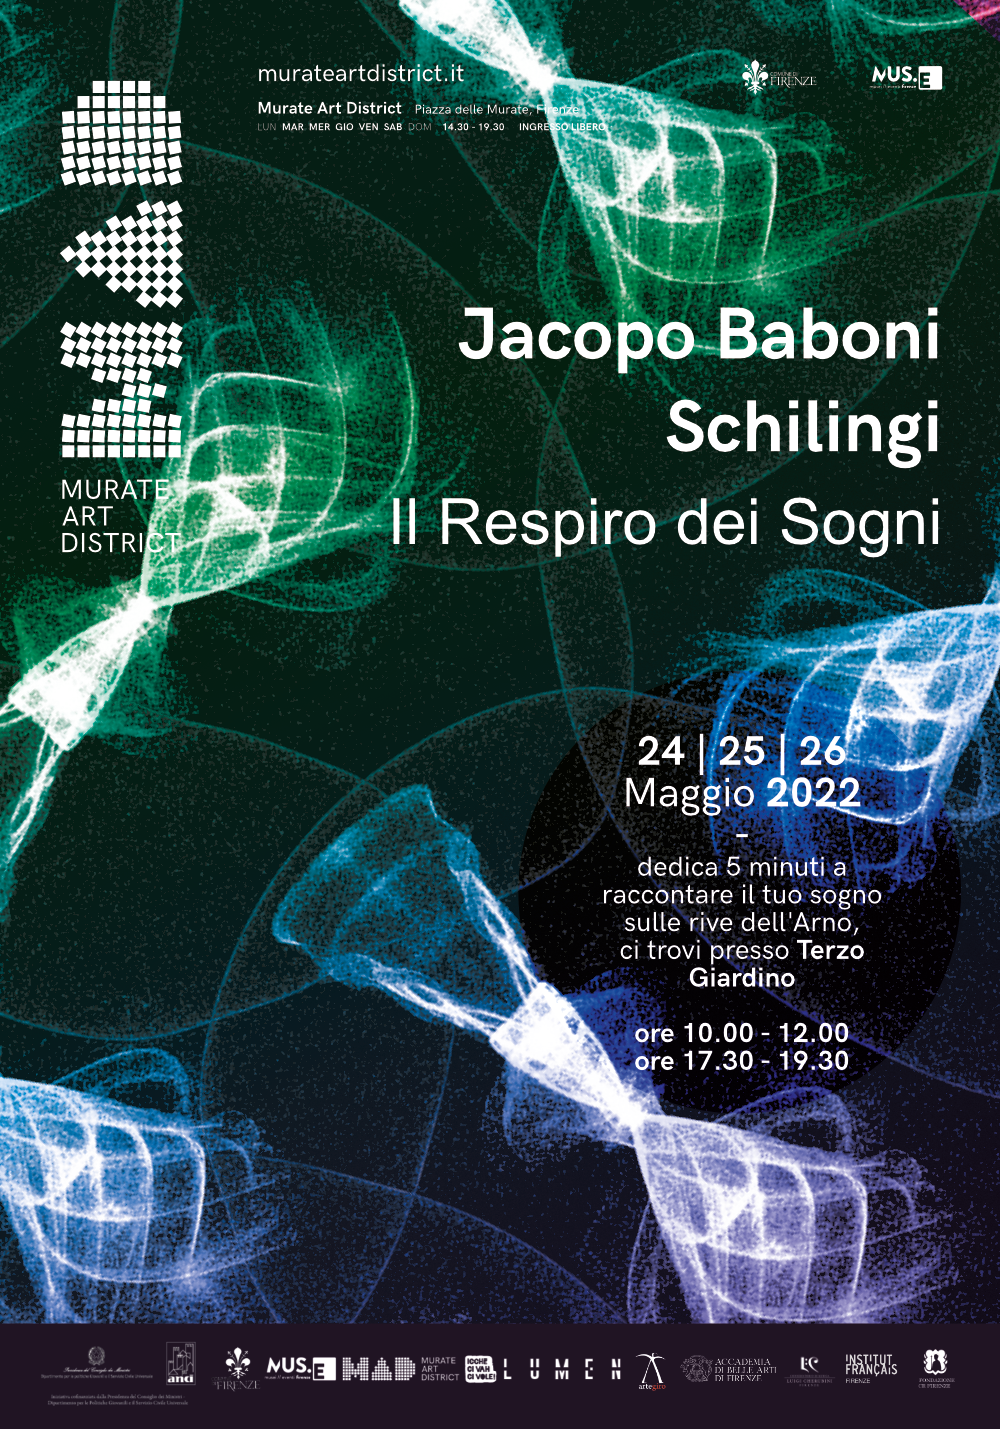 Jacopo Baboni Schilingi - Il Respiro dei Sogni